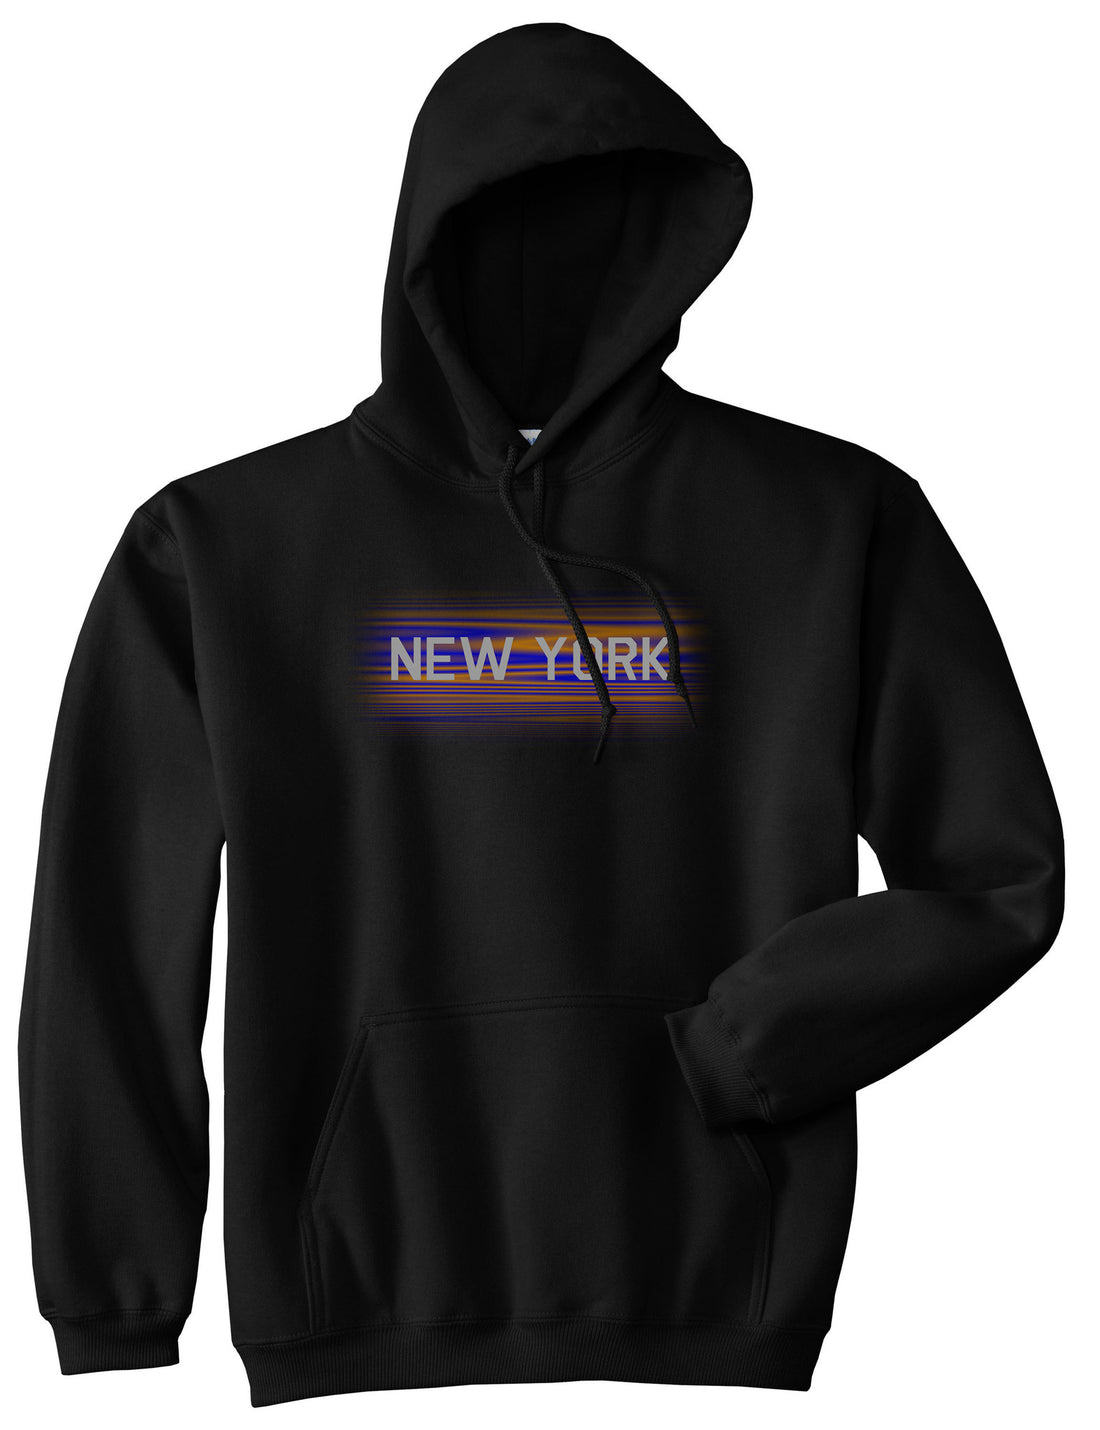 New York Hometeam Pullover Hoodie in Black